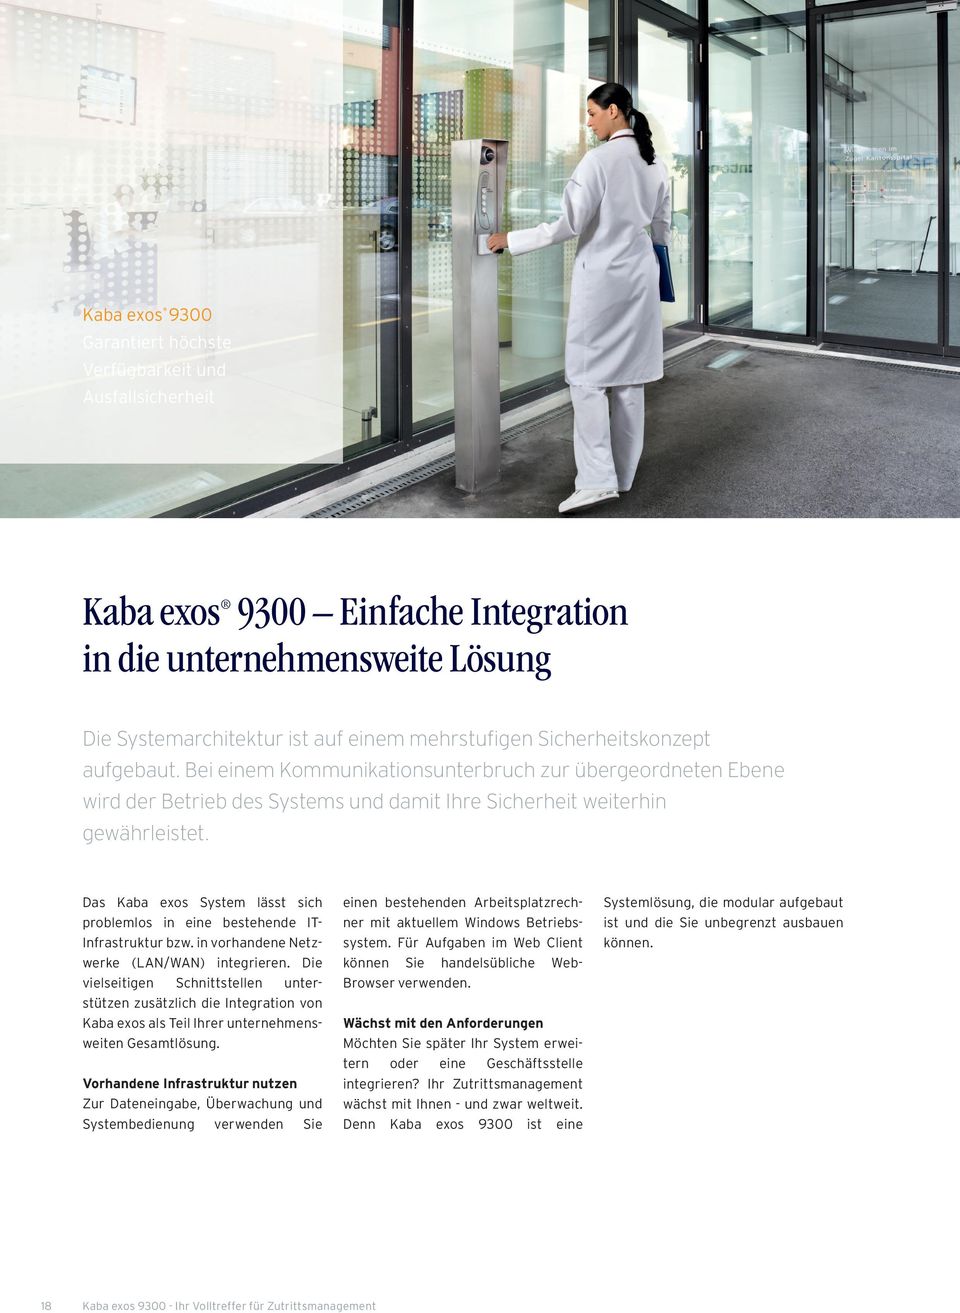 Das Kaba exos System lässt sich problemlos in eine bestehende IT- Infrastruktur bzw. in vorhandene Netzwerke (LAN/WAN) integrieren.